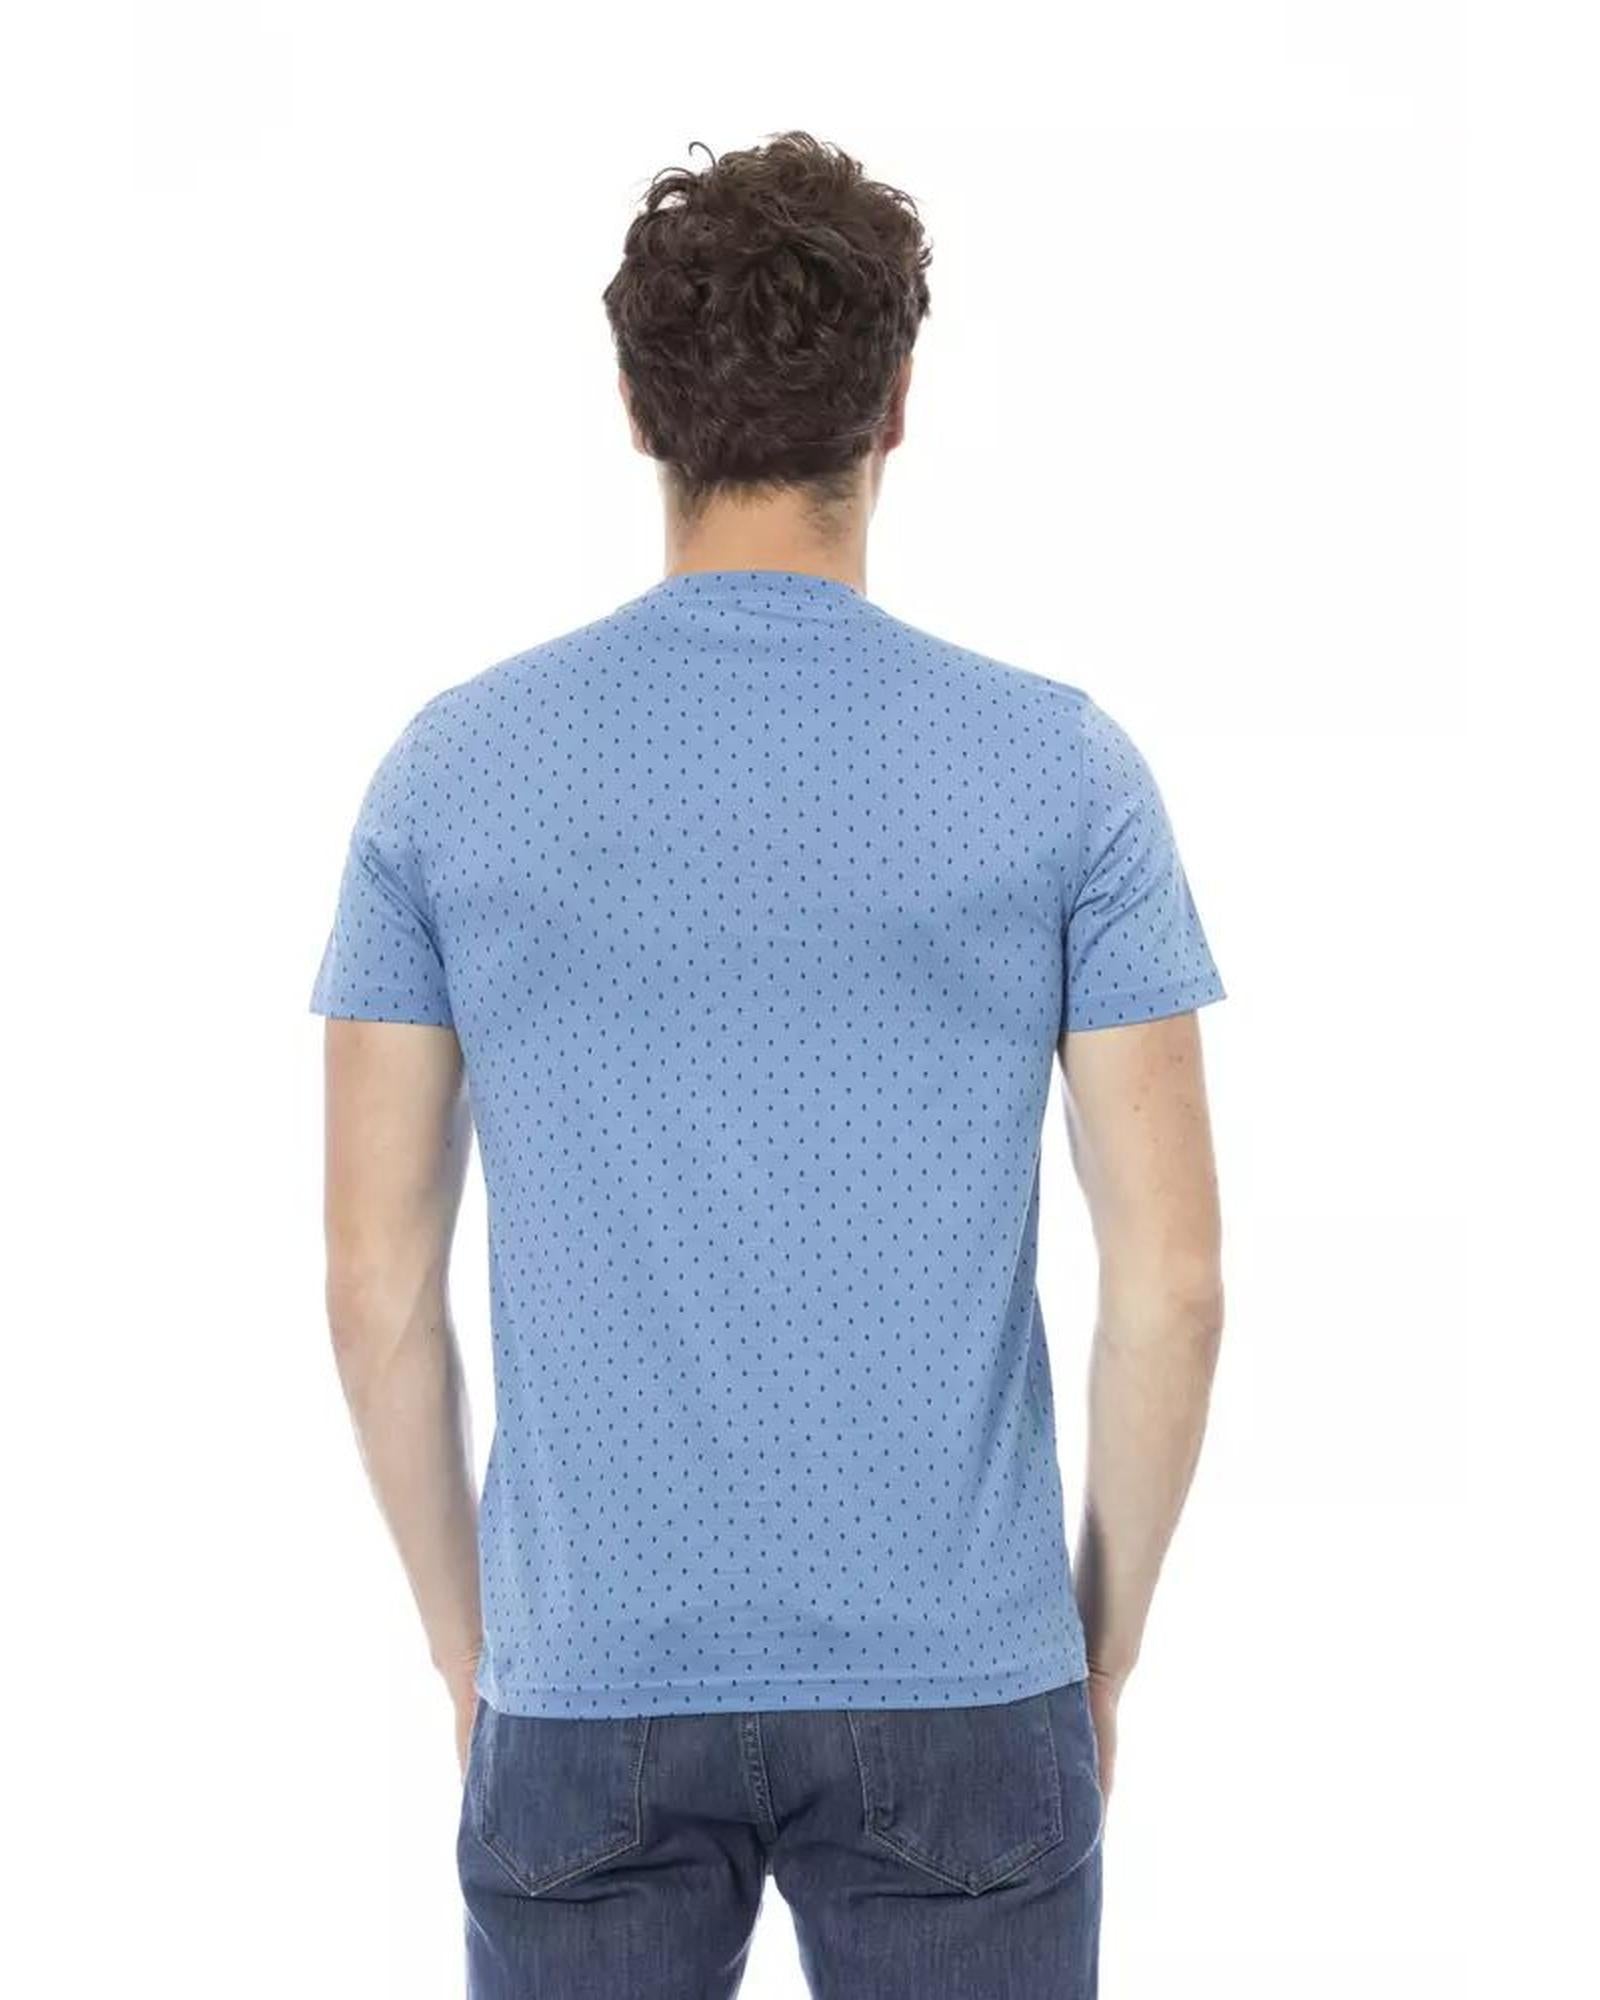 Baldinini Trend Men's Light Blue Cotton T-Shirt